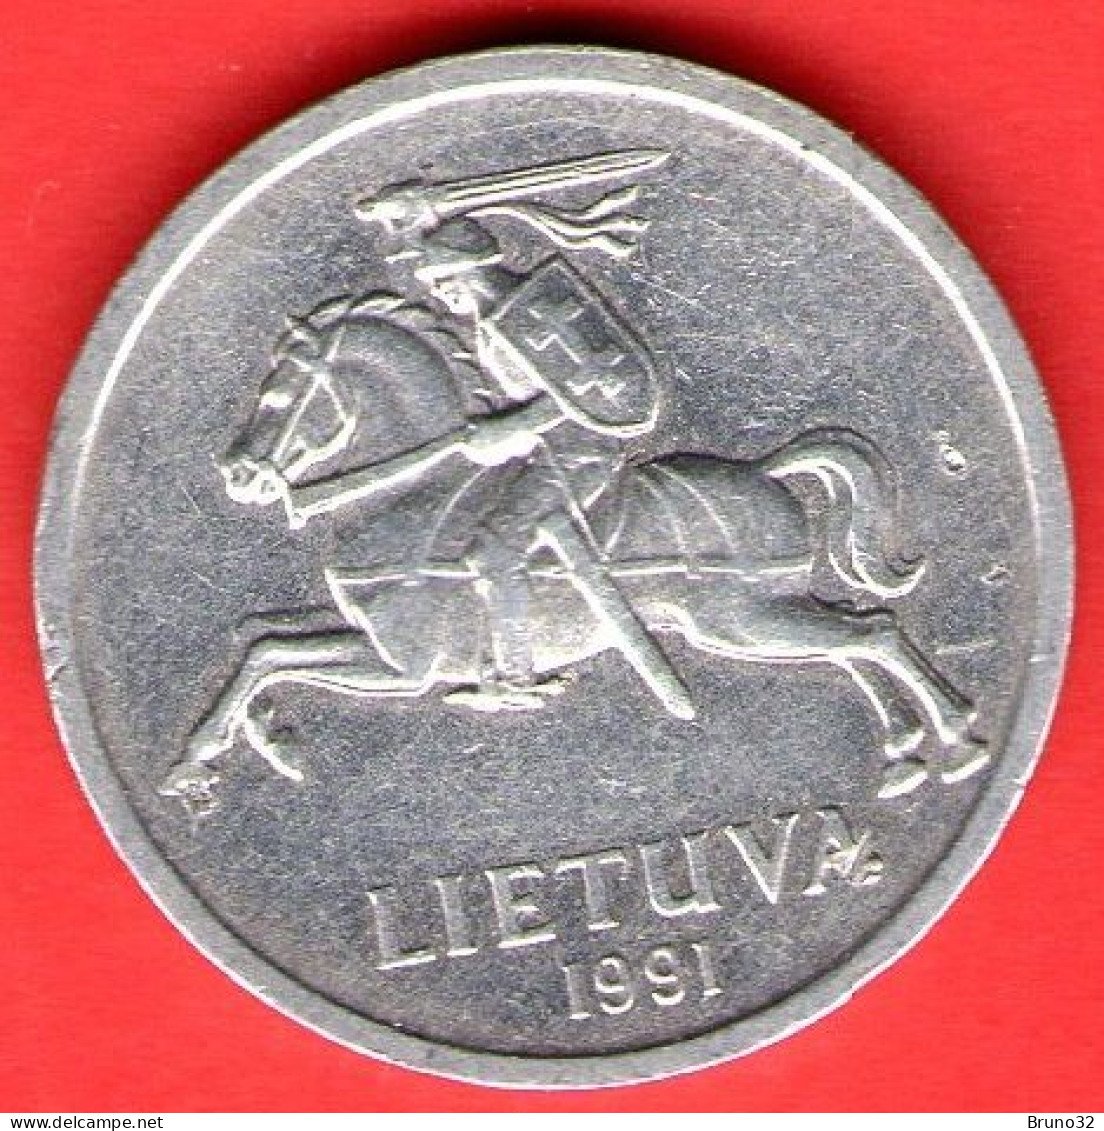 Lituania - Lietuva - Lithuania - 1991 - 1 Centas - QFDC/aUNC - Come Da Foto - Lithuania